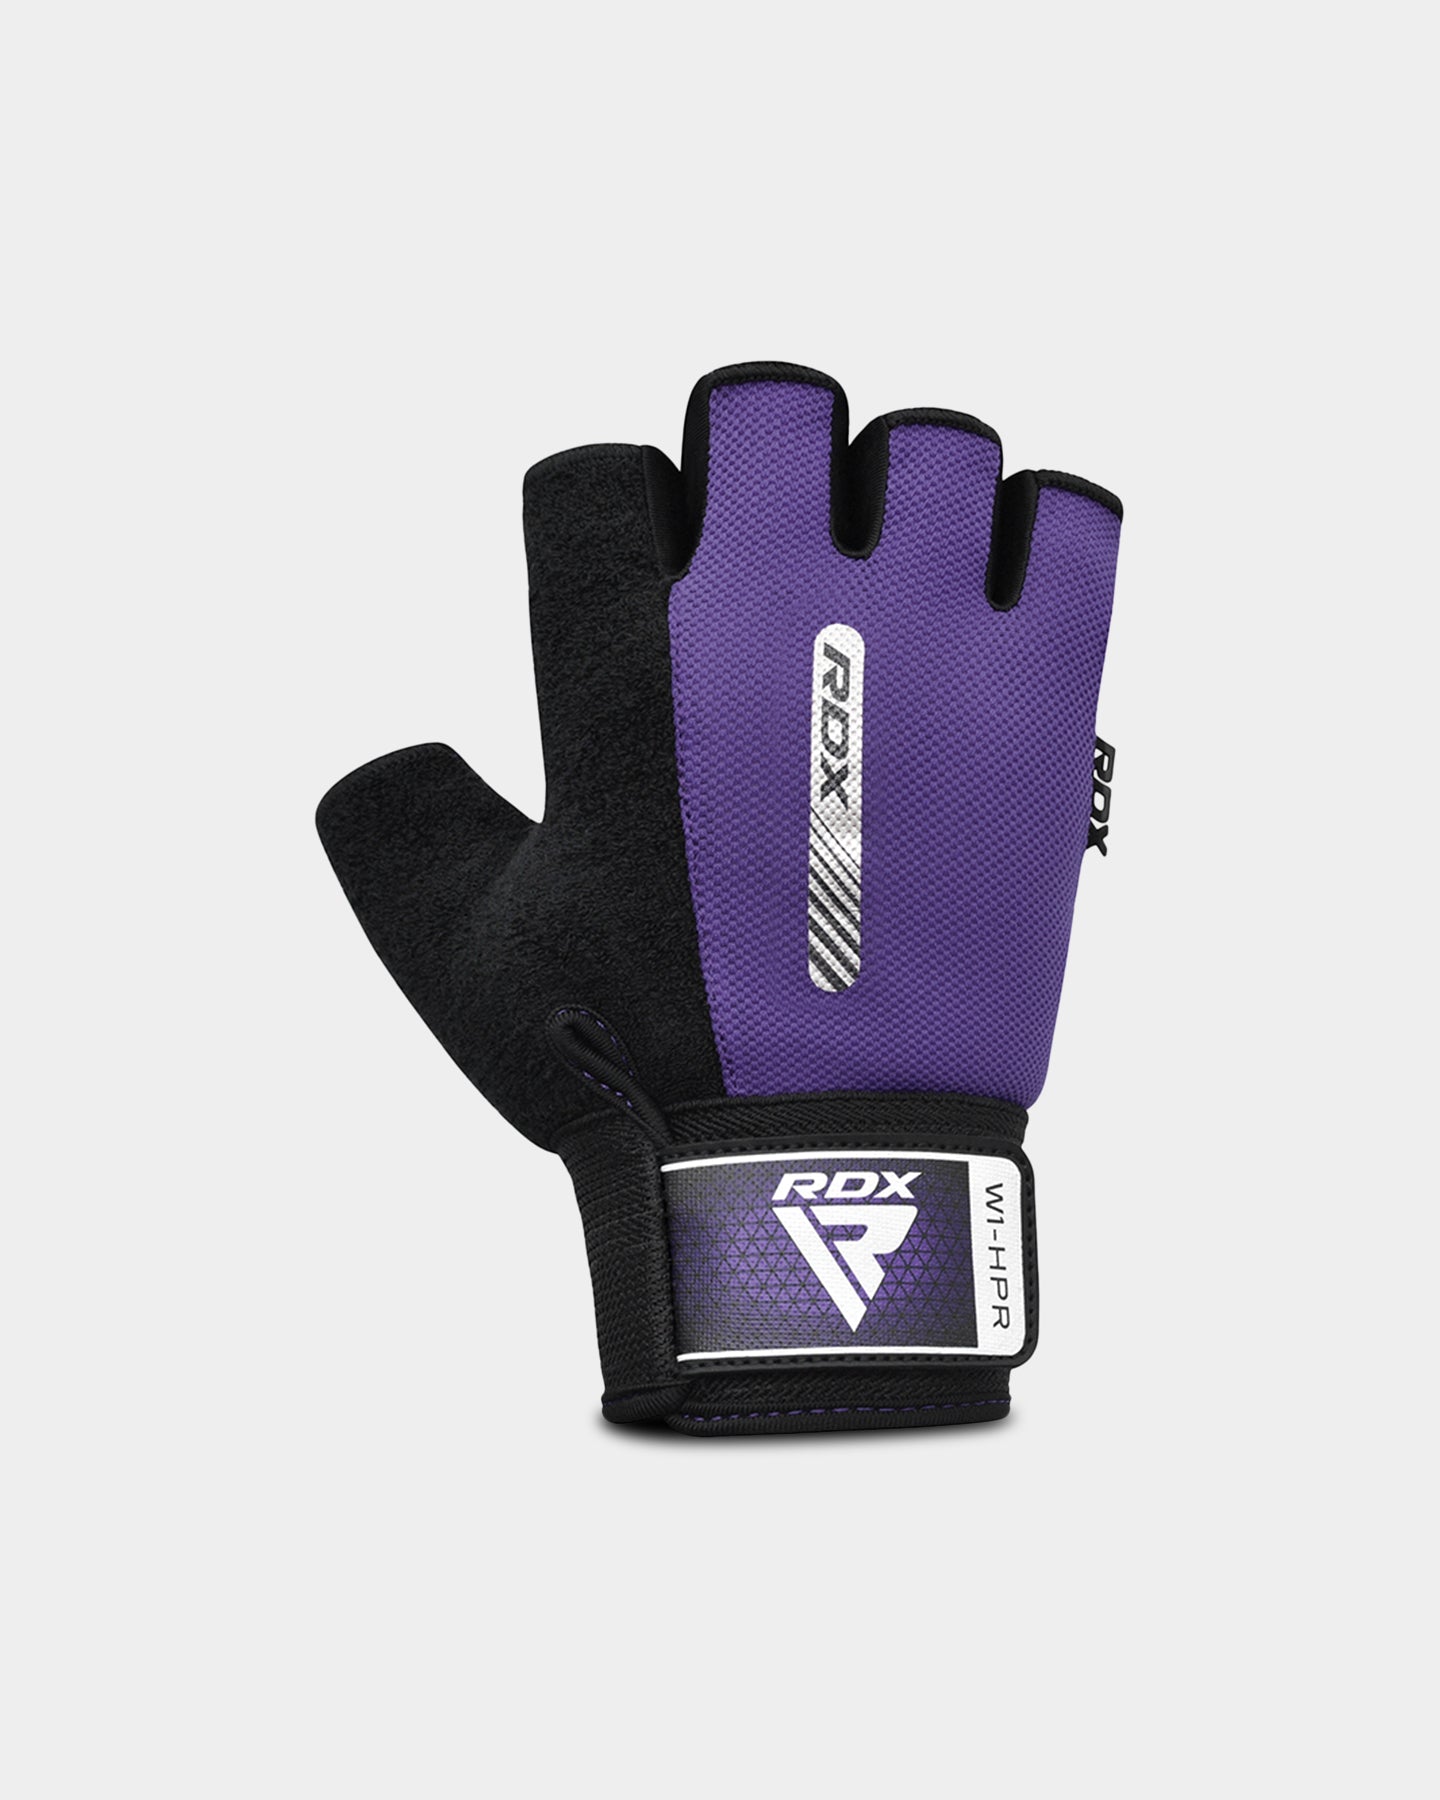 RDX Sports W1 Gym Workout Gloves, S, Purple A2